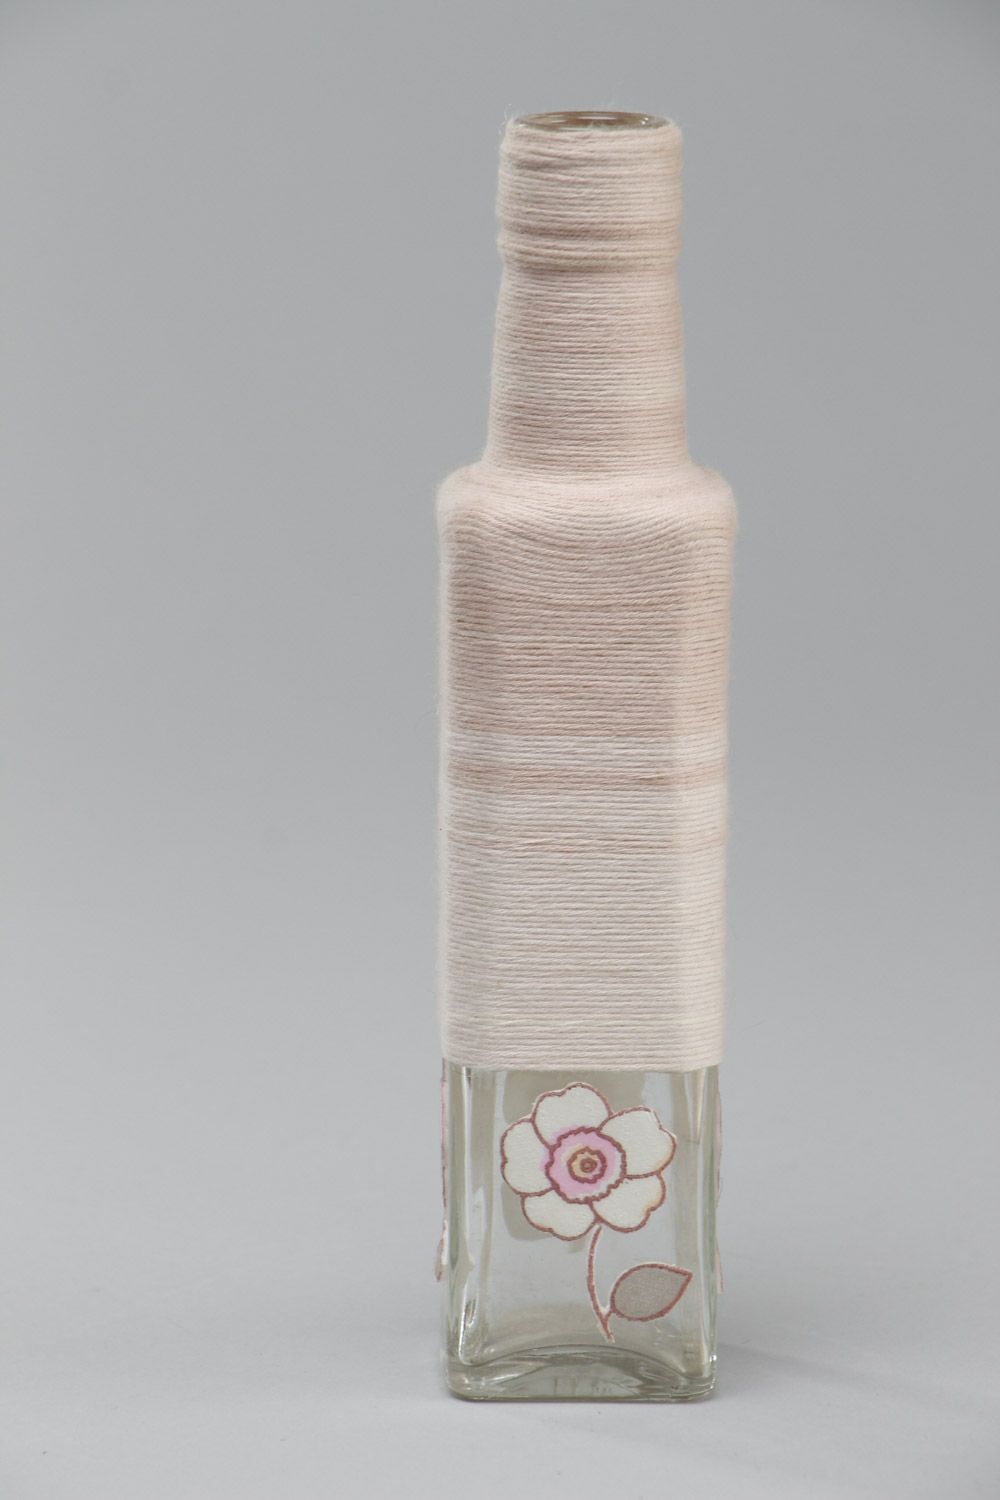 Petite bouteille décorative faite main entourée de ficelle en coton 25 cl photo 2